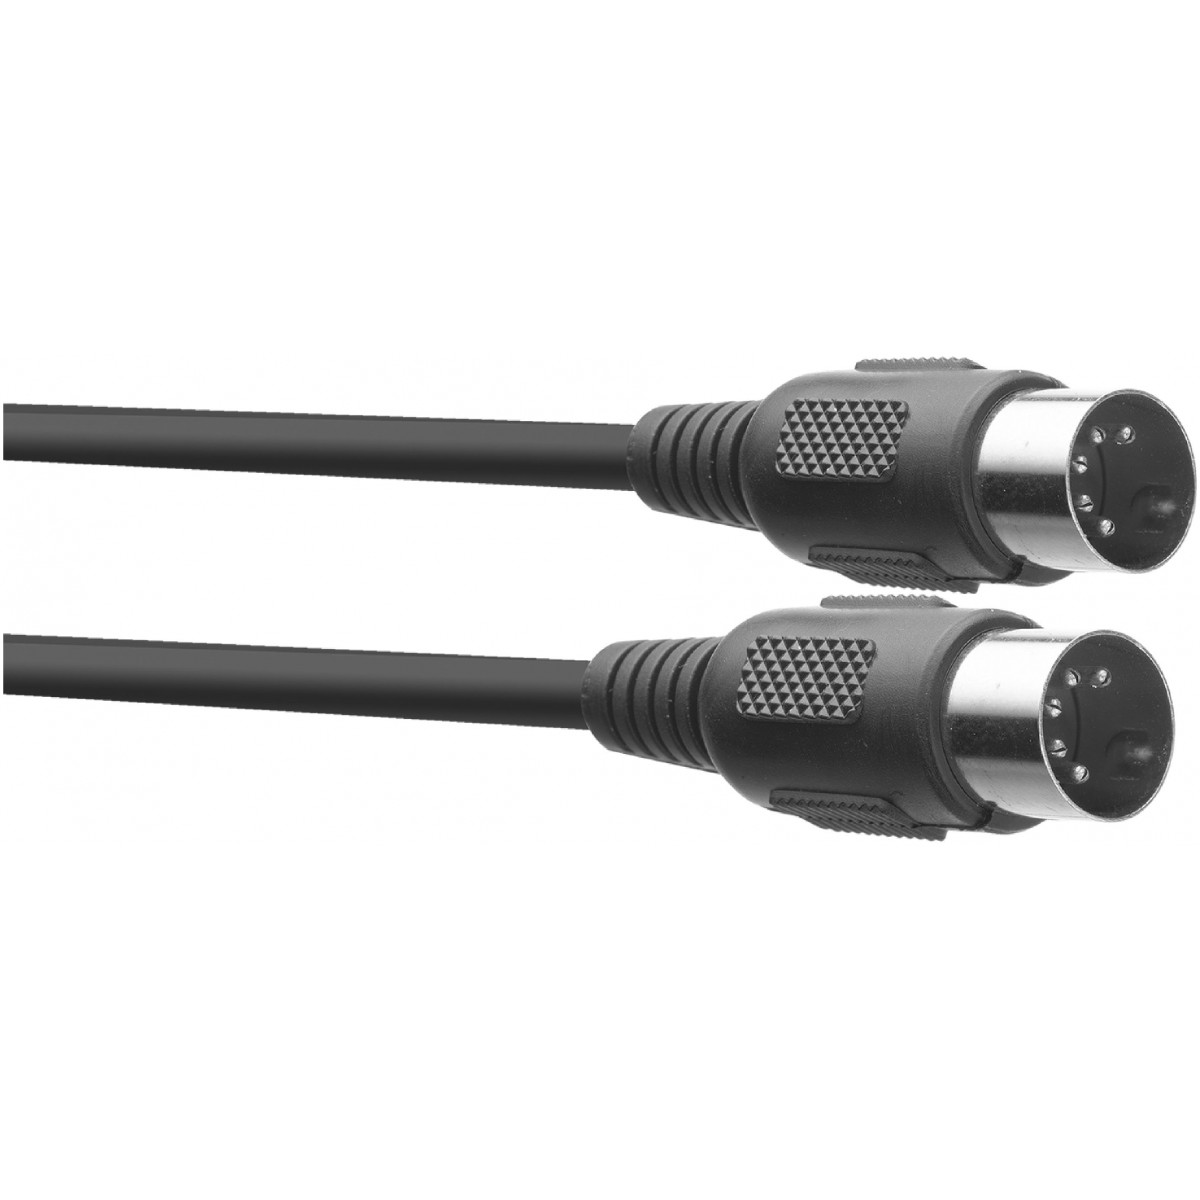 MIDI kabel, DIN zástrčka/DIN zástrčka, 2 m